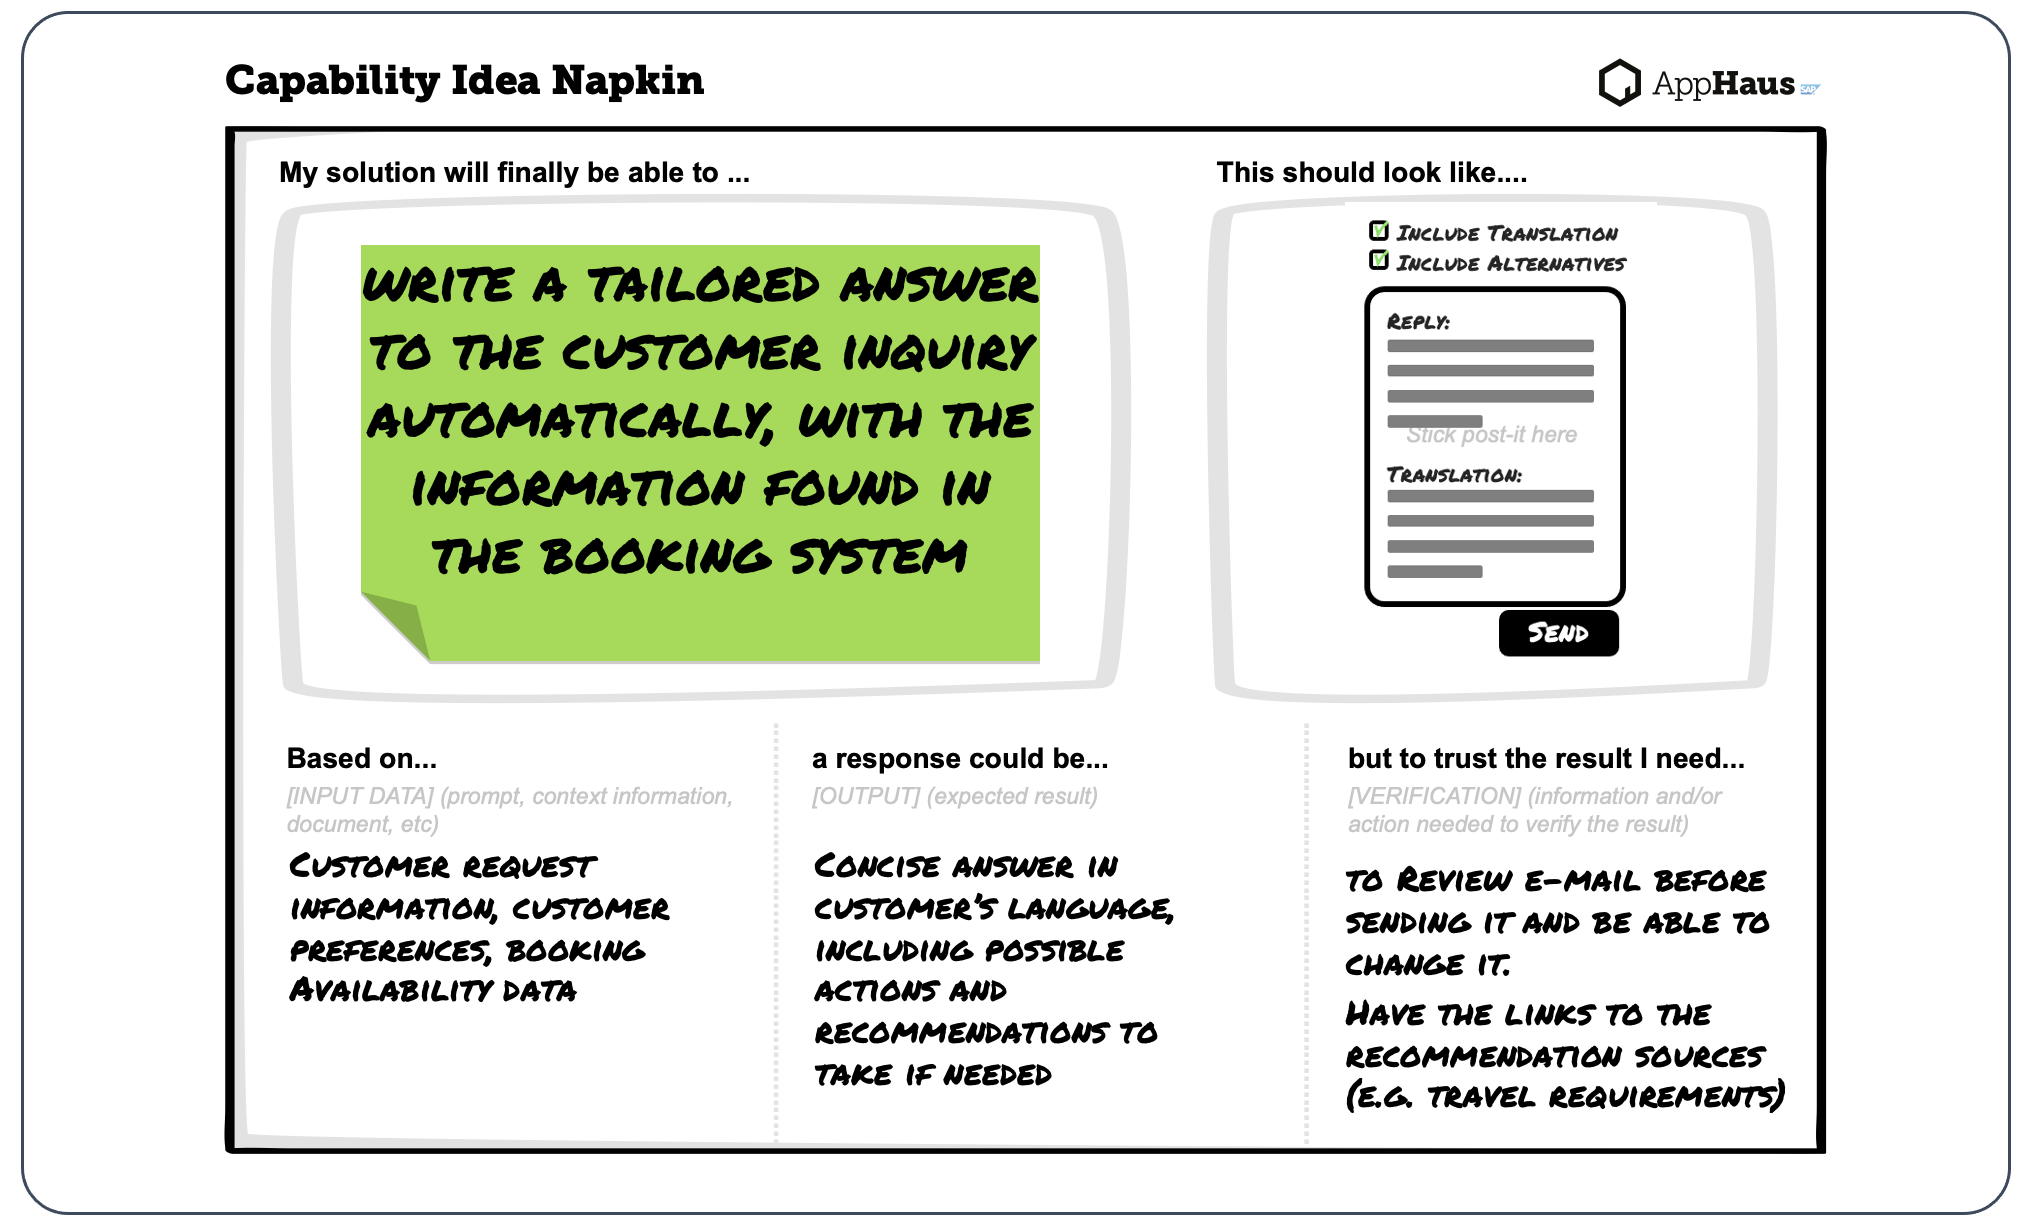 Capability Idea Napkin Example